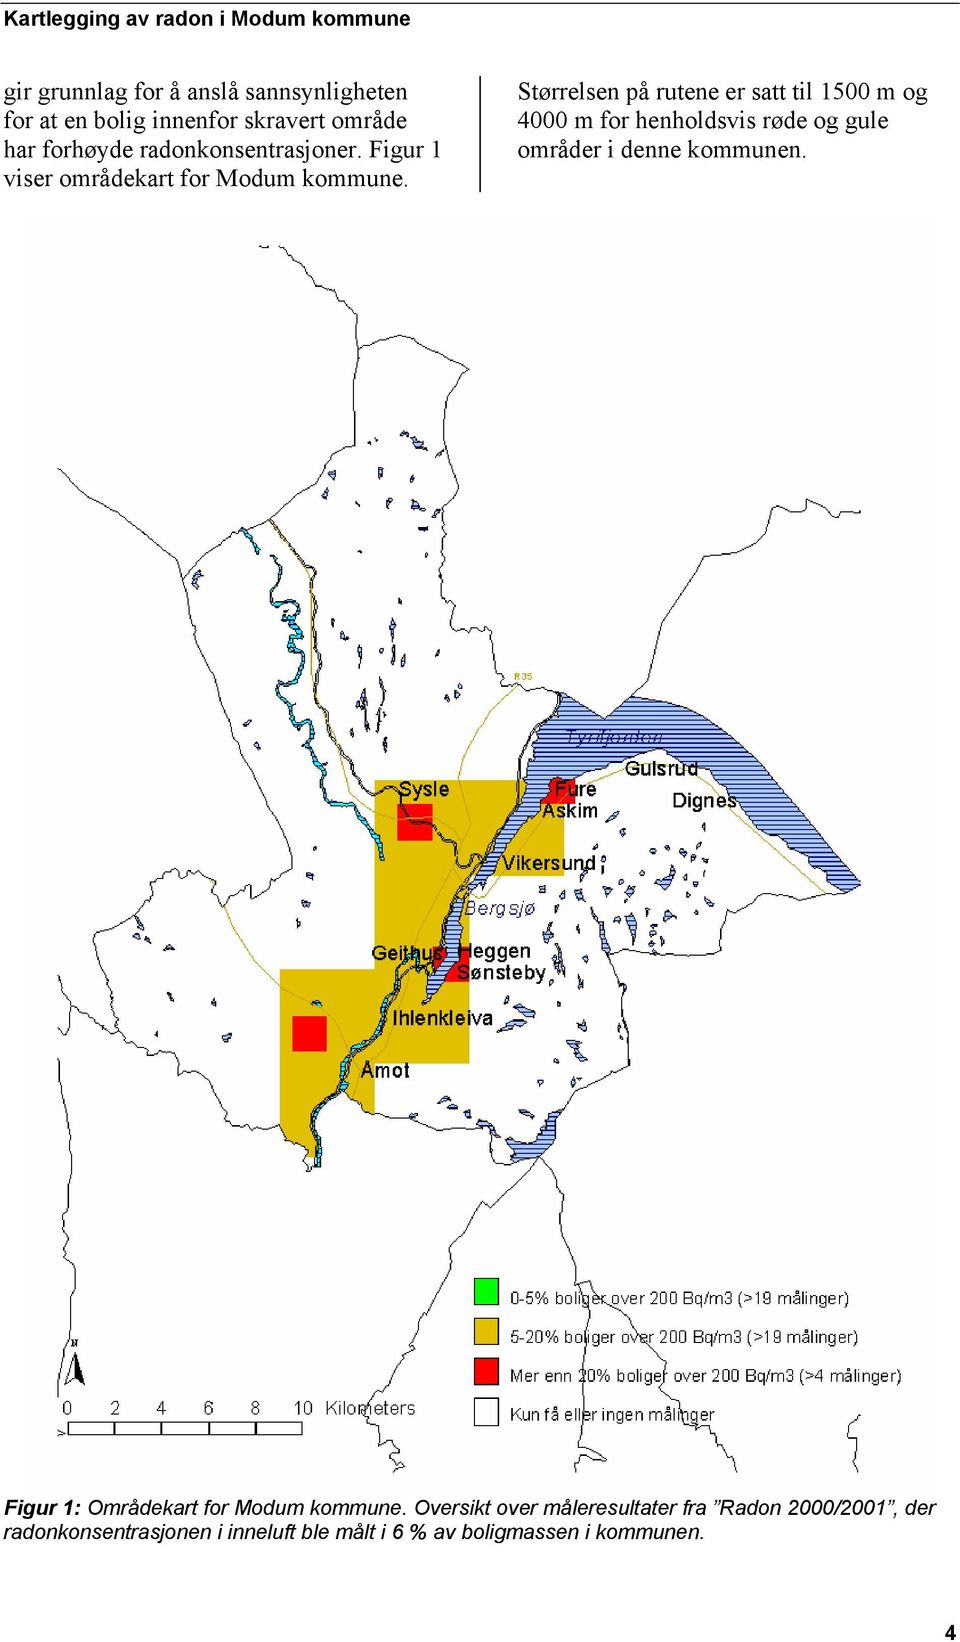 Størrelsen på rutene er satt til 1500 m og 4000 m for henholdsvis røde og gule områder i denne kommunen.